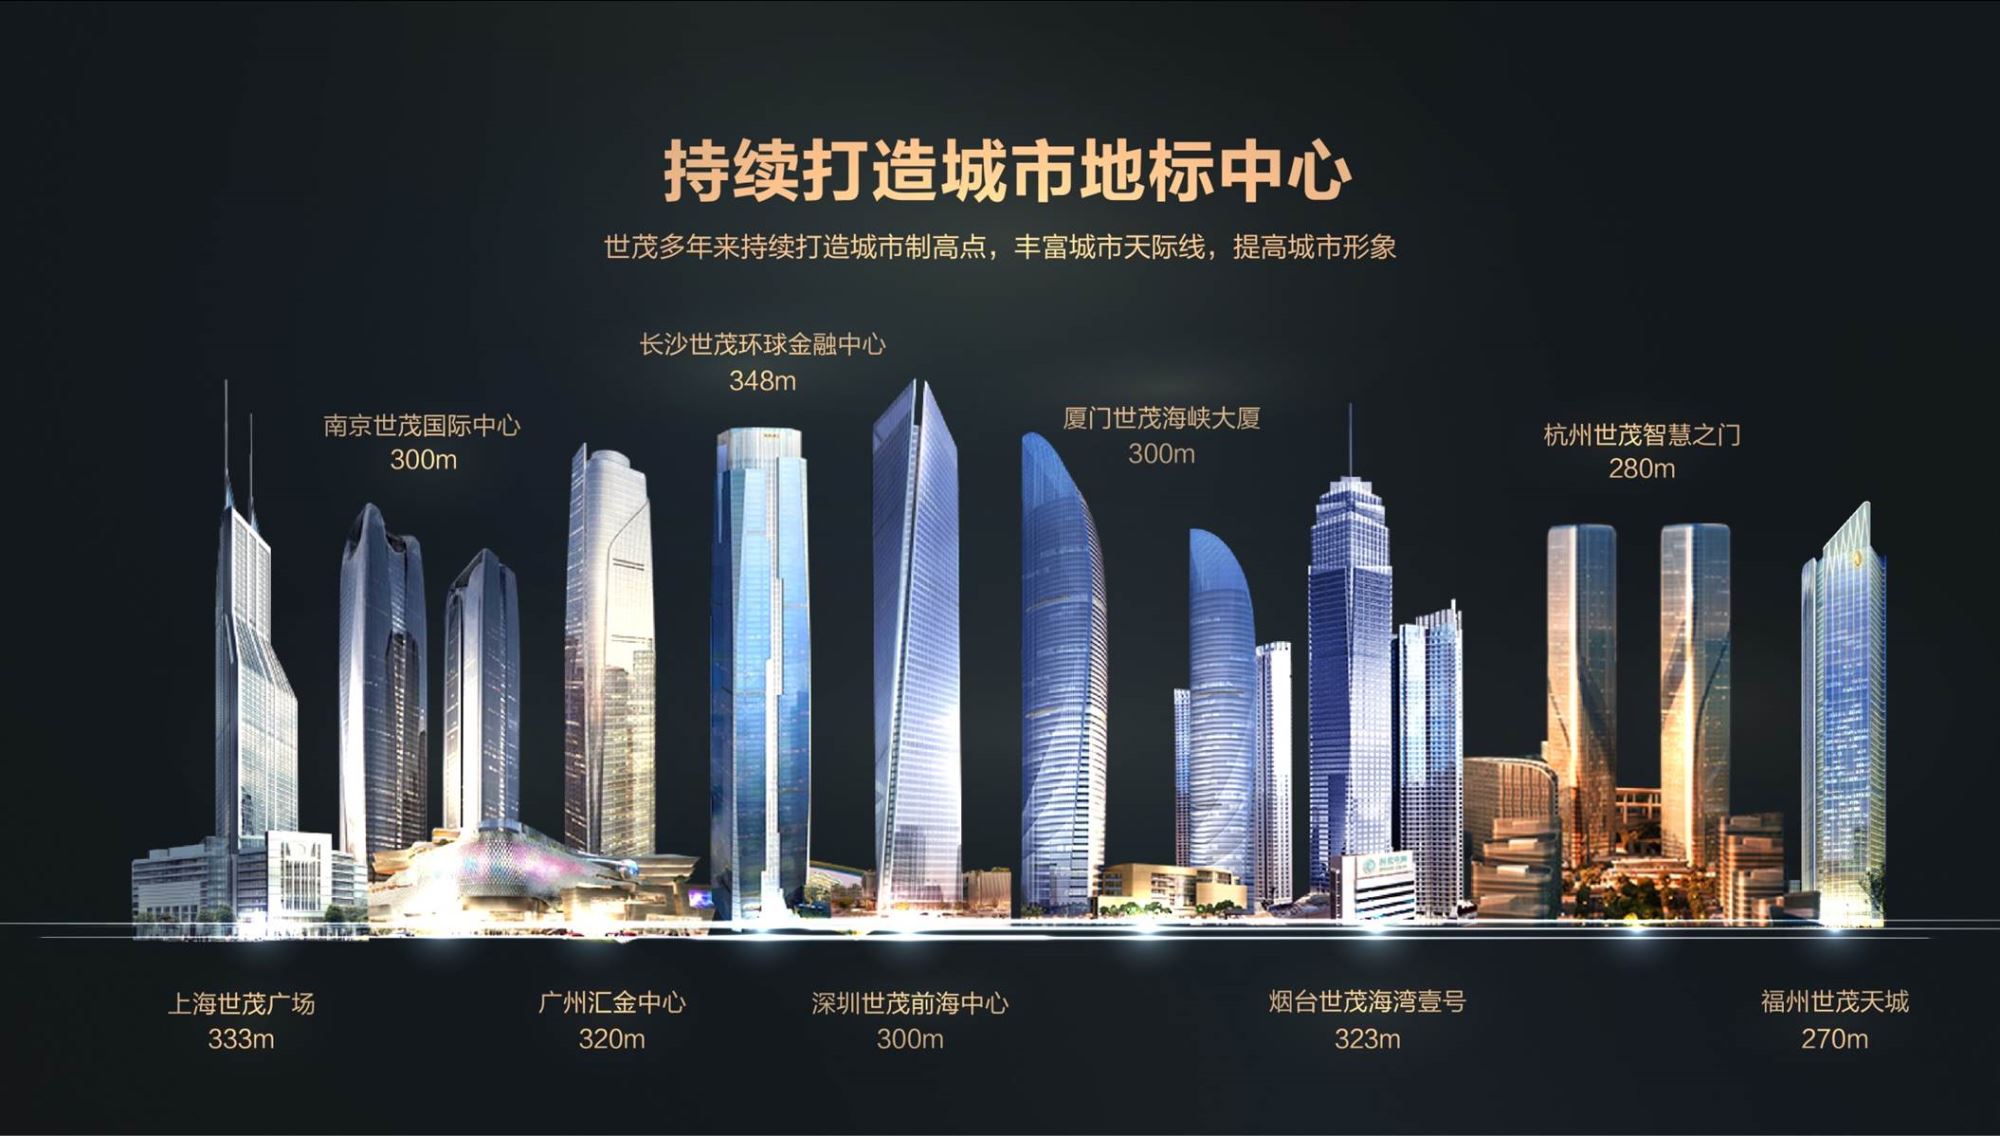 世茂多个地标产品线项目布局深圳 推动城市未来发展